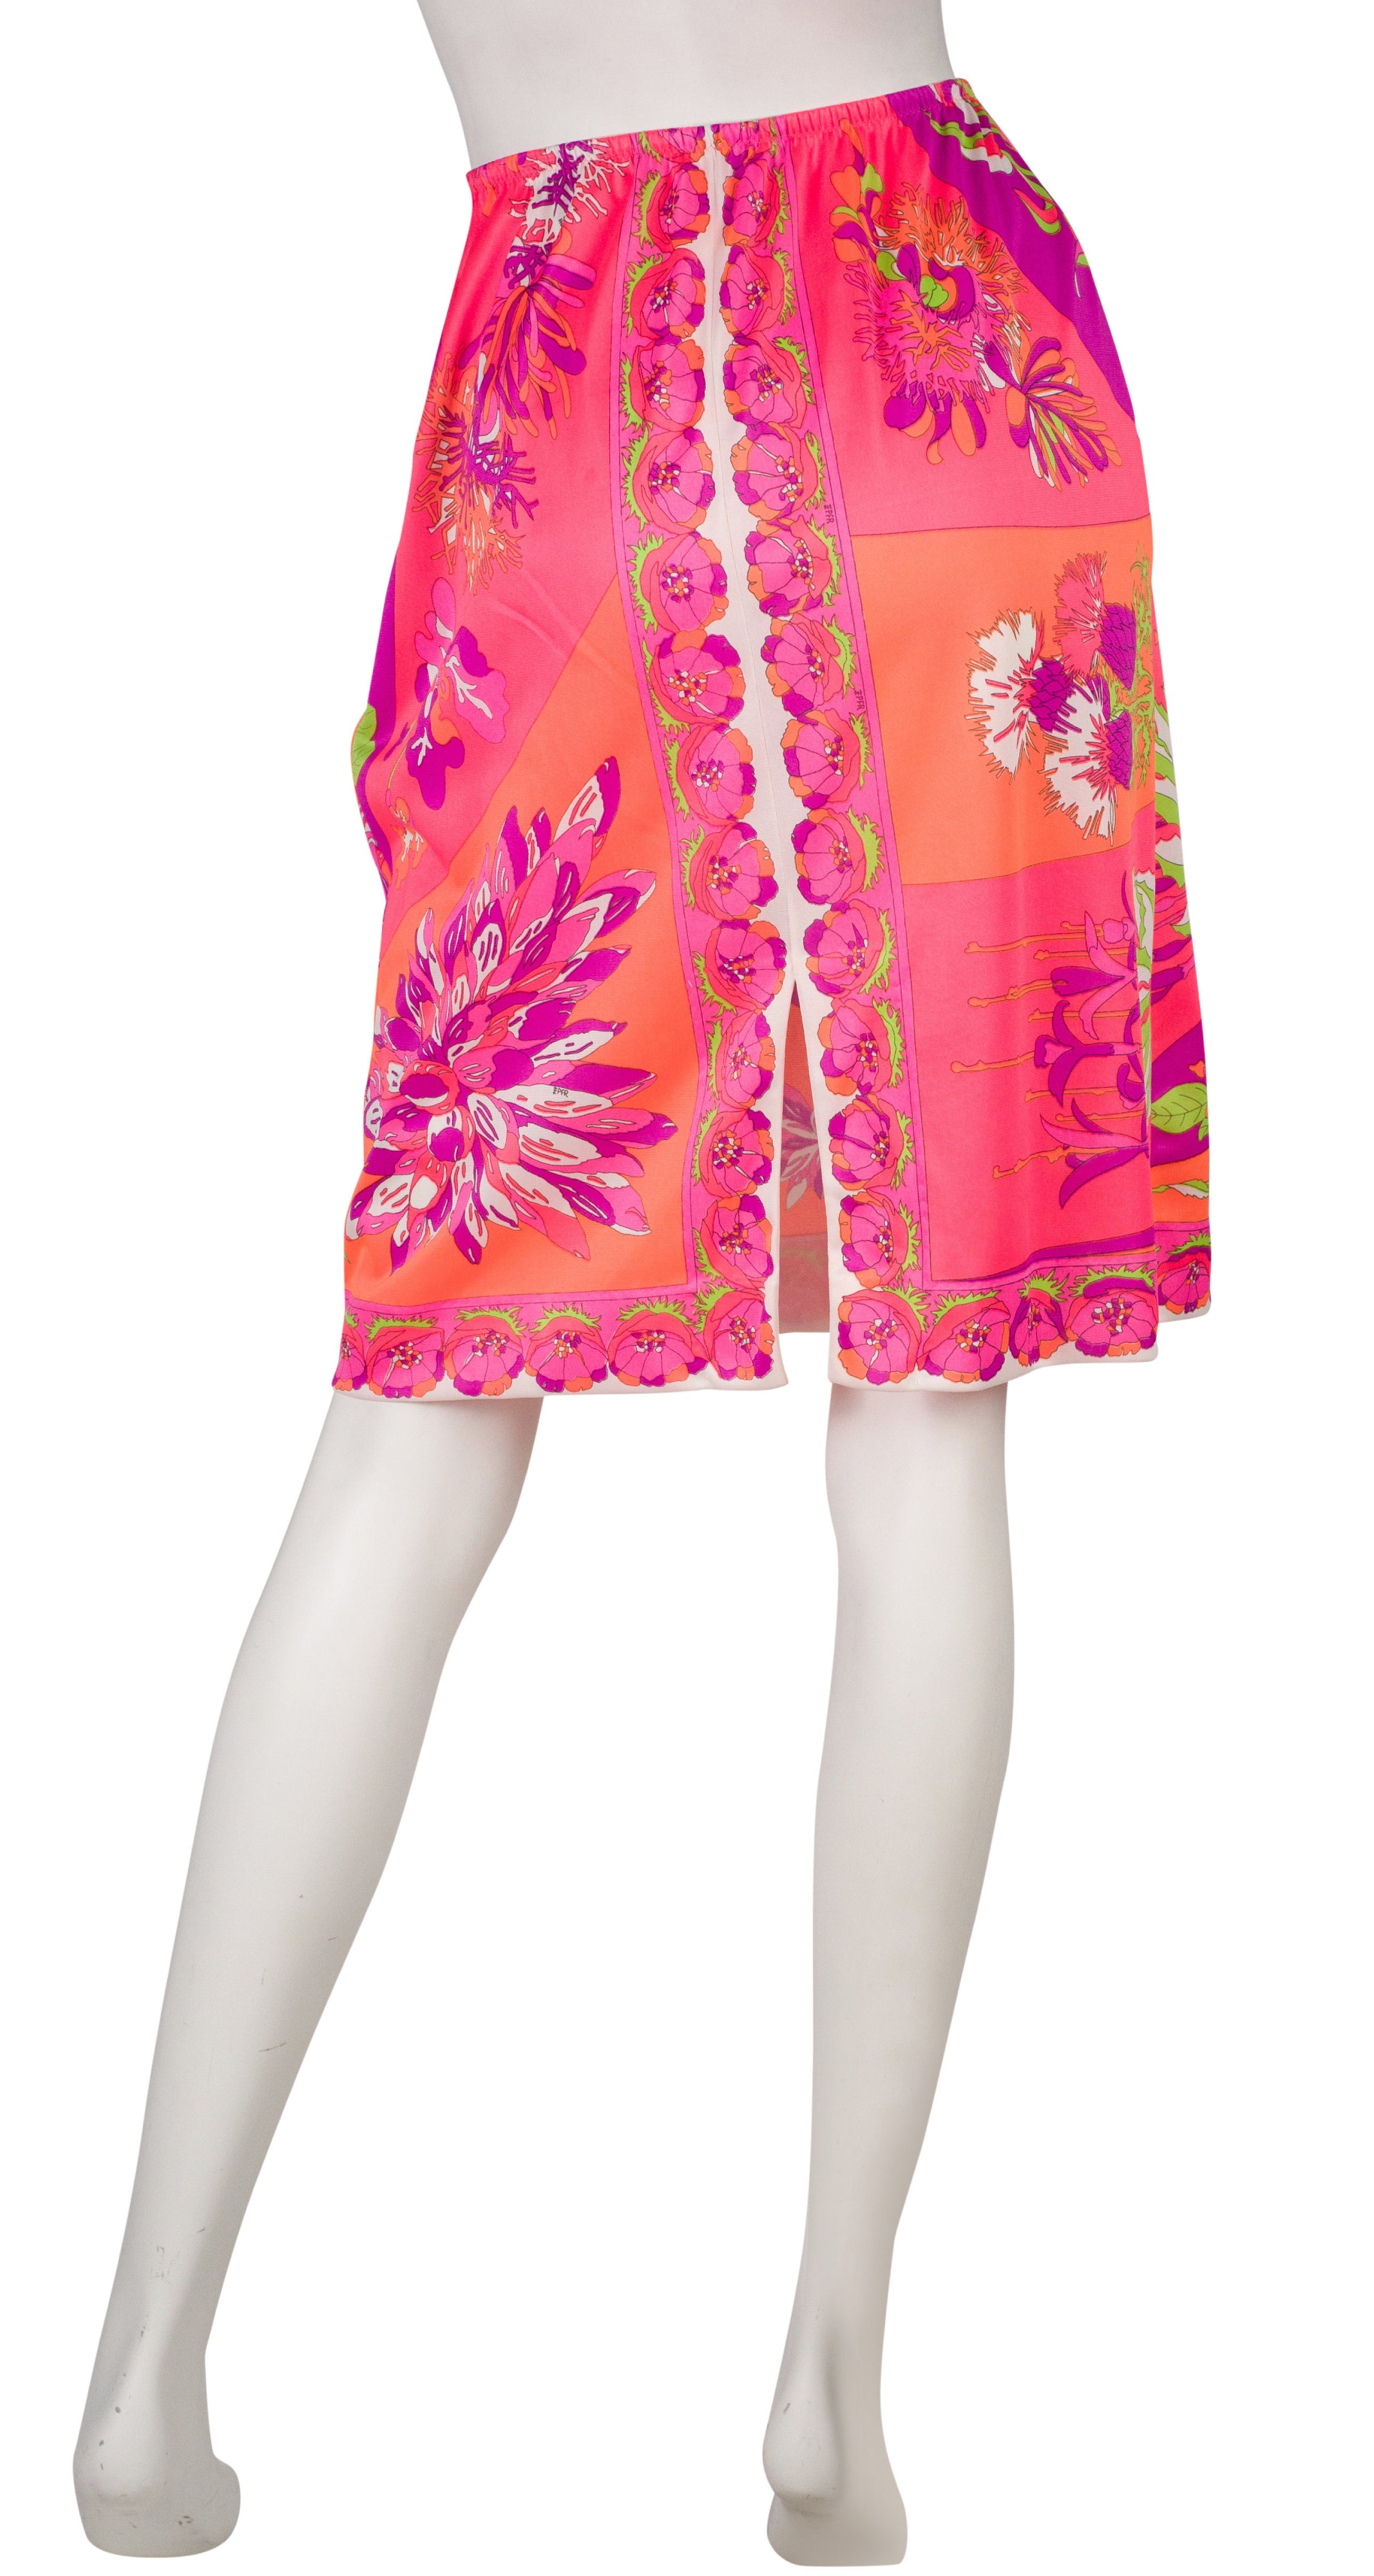 Emilio Pucci x Formfit Rogers 1960s Vibrant Floral Lingerie Slip Skirt –  Featherstone Vintage